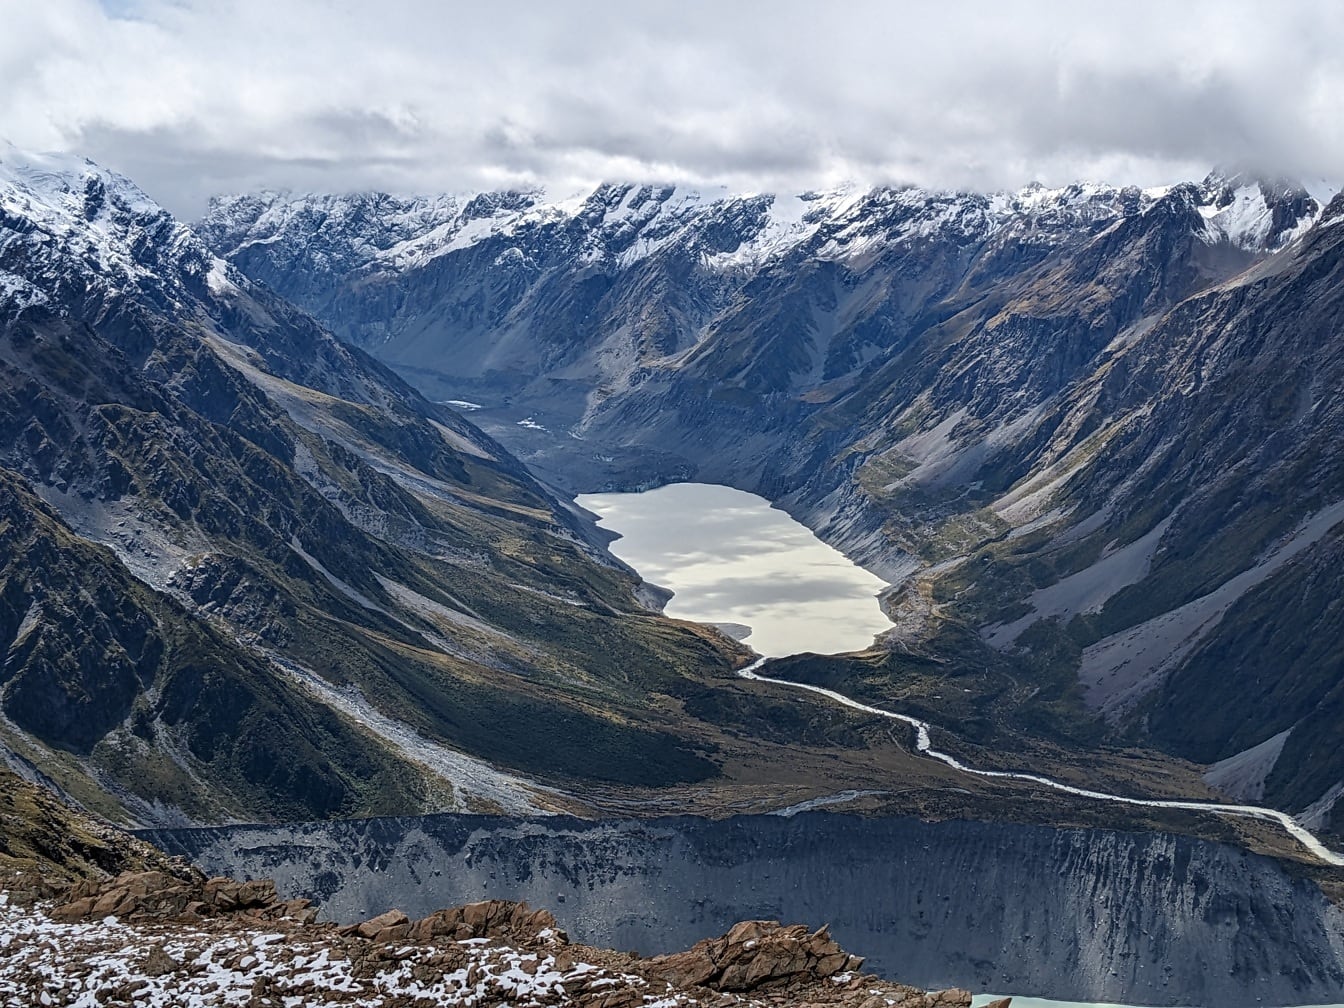 Toàn cảnh sông băng túp lều Muller với hồ trong vườn quốc gia